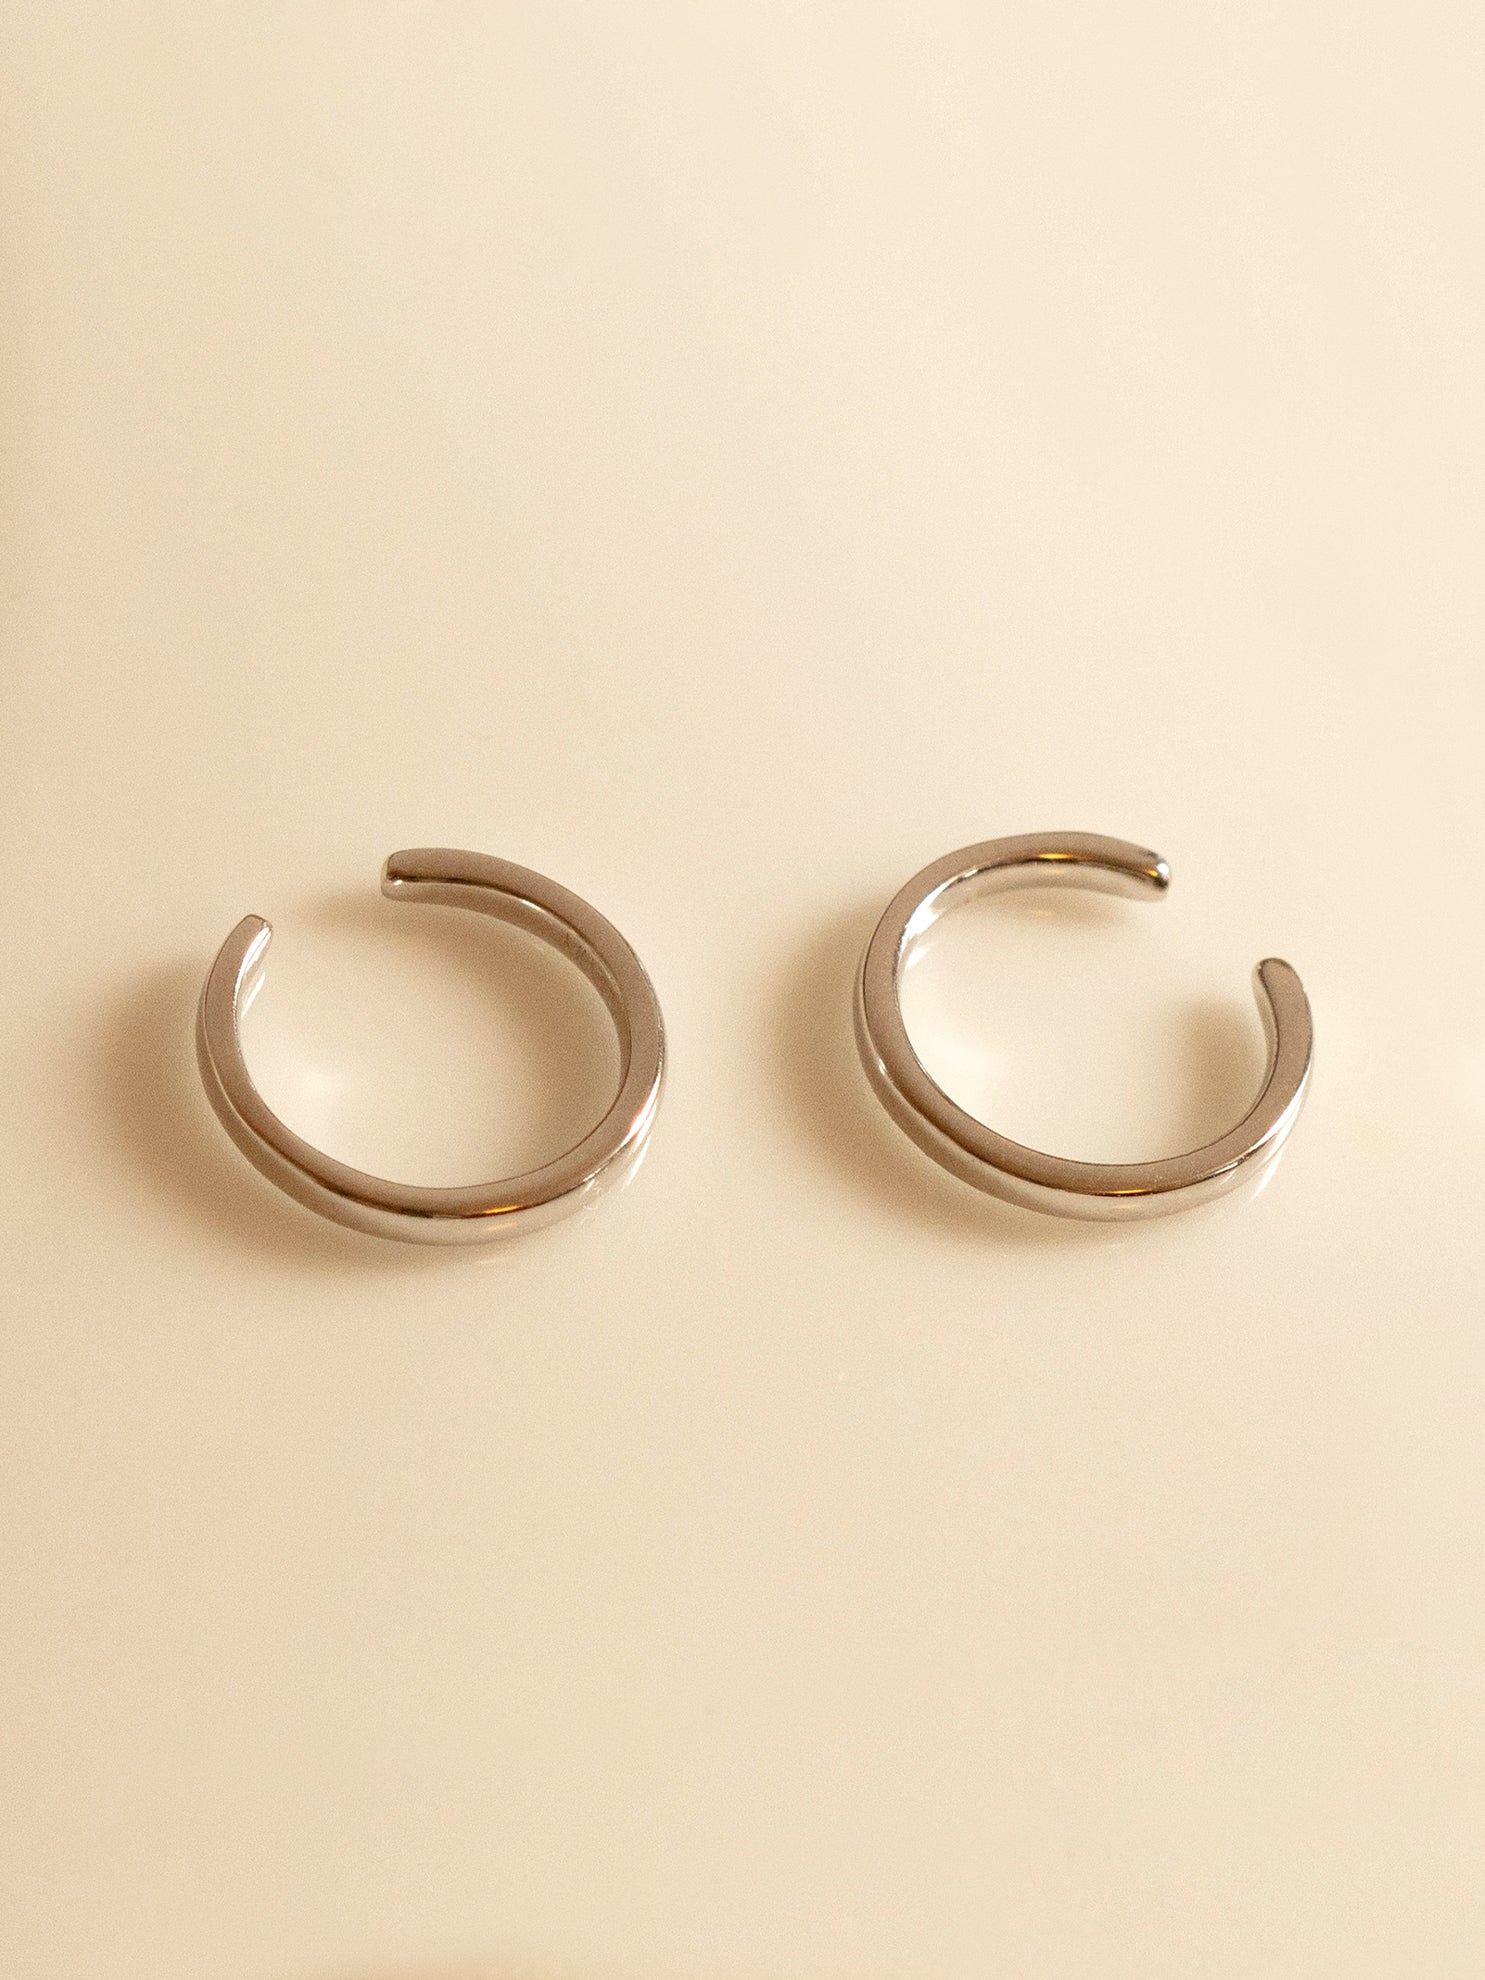 Silver Thin Smooth Ear Cuffs - Adjustable